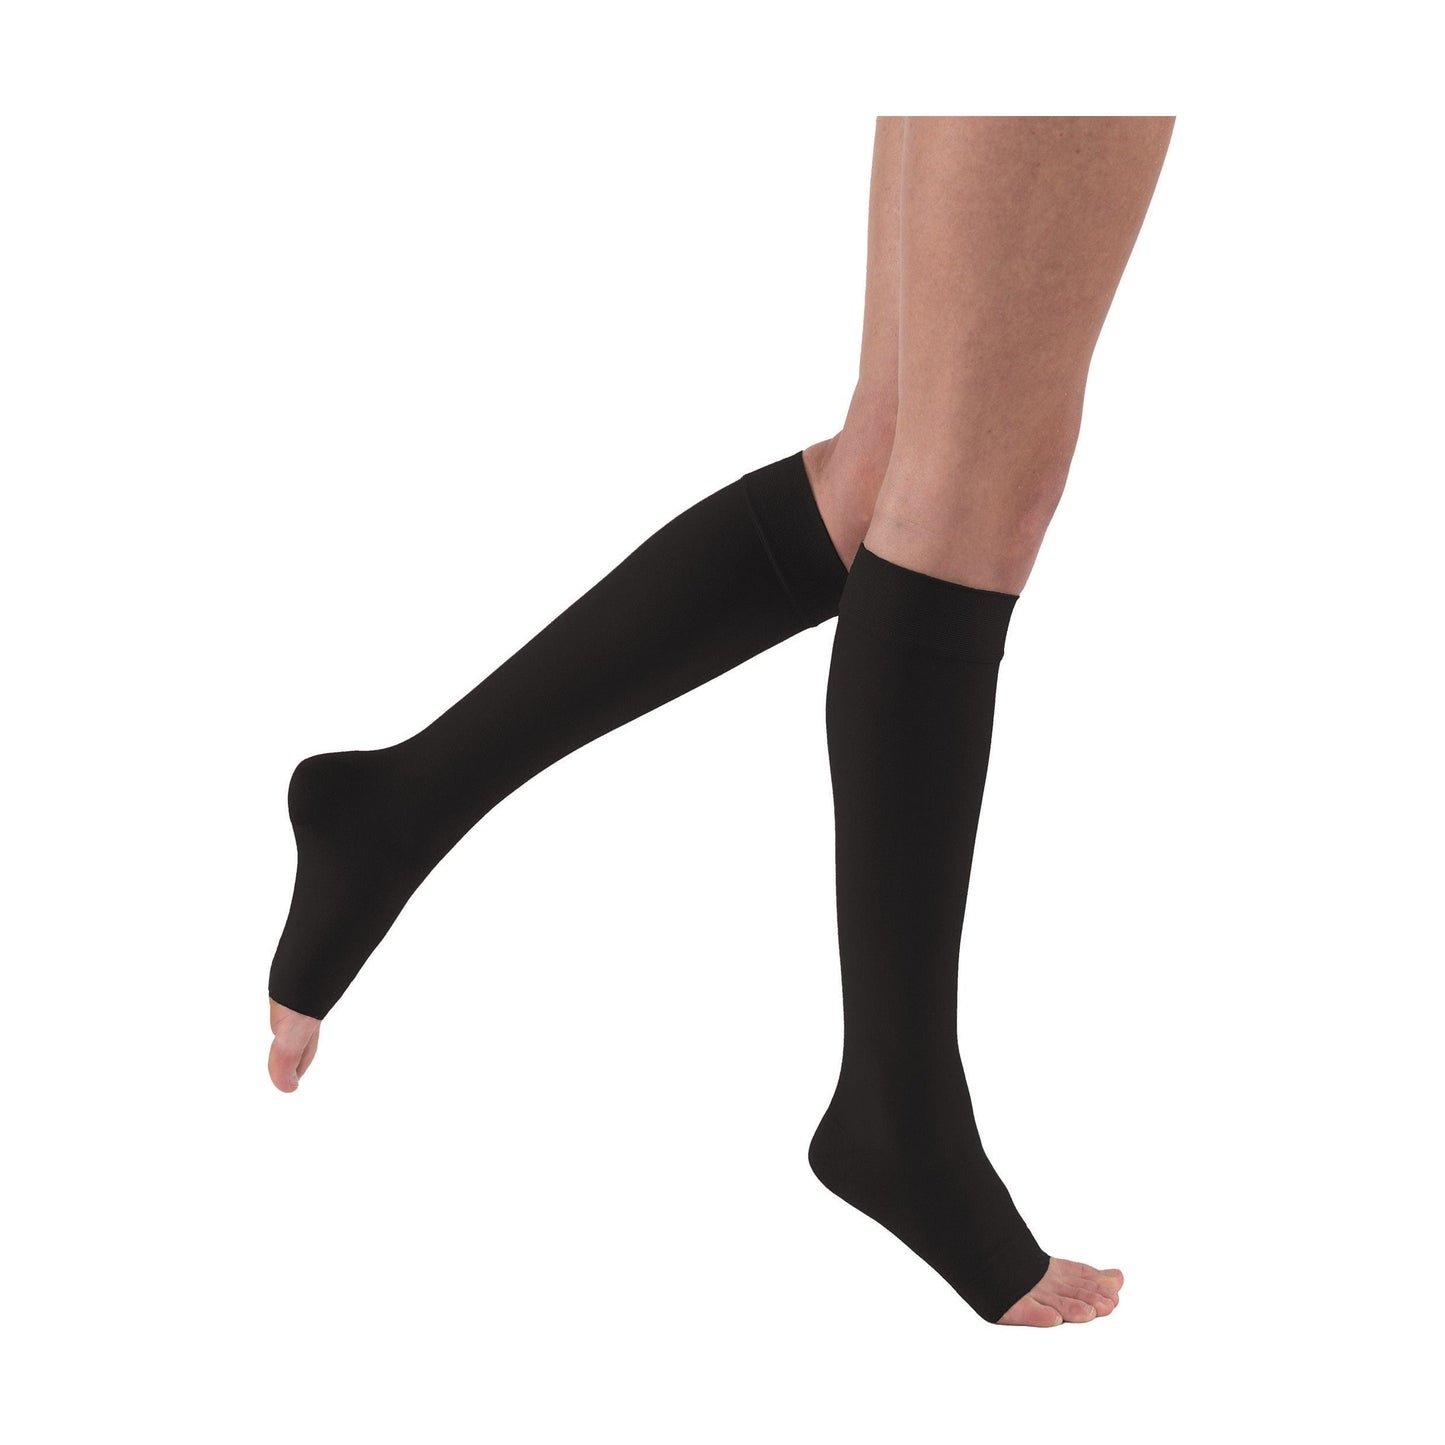 Jobst Anti-Embolism/GP Knee Highs - 12 pair – Jobst Stockings